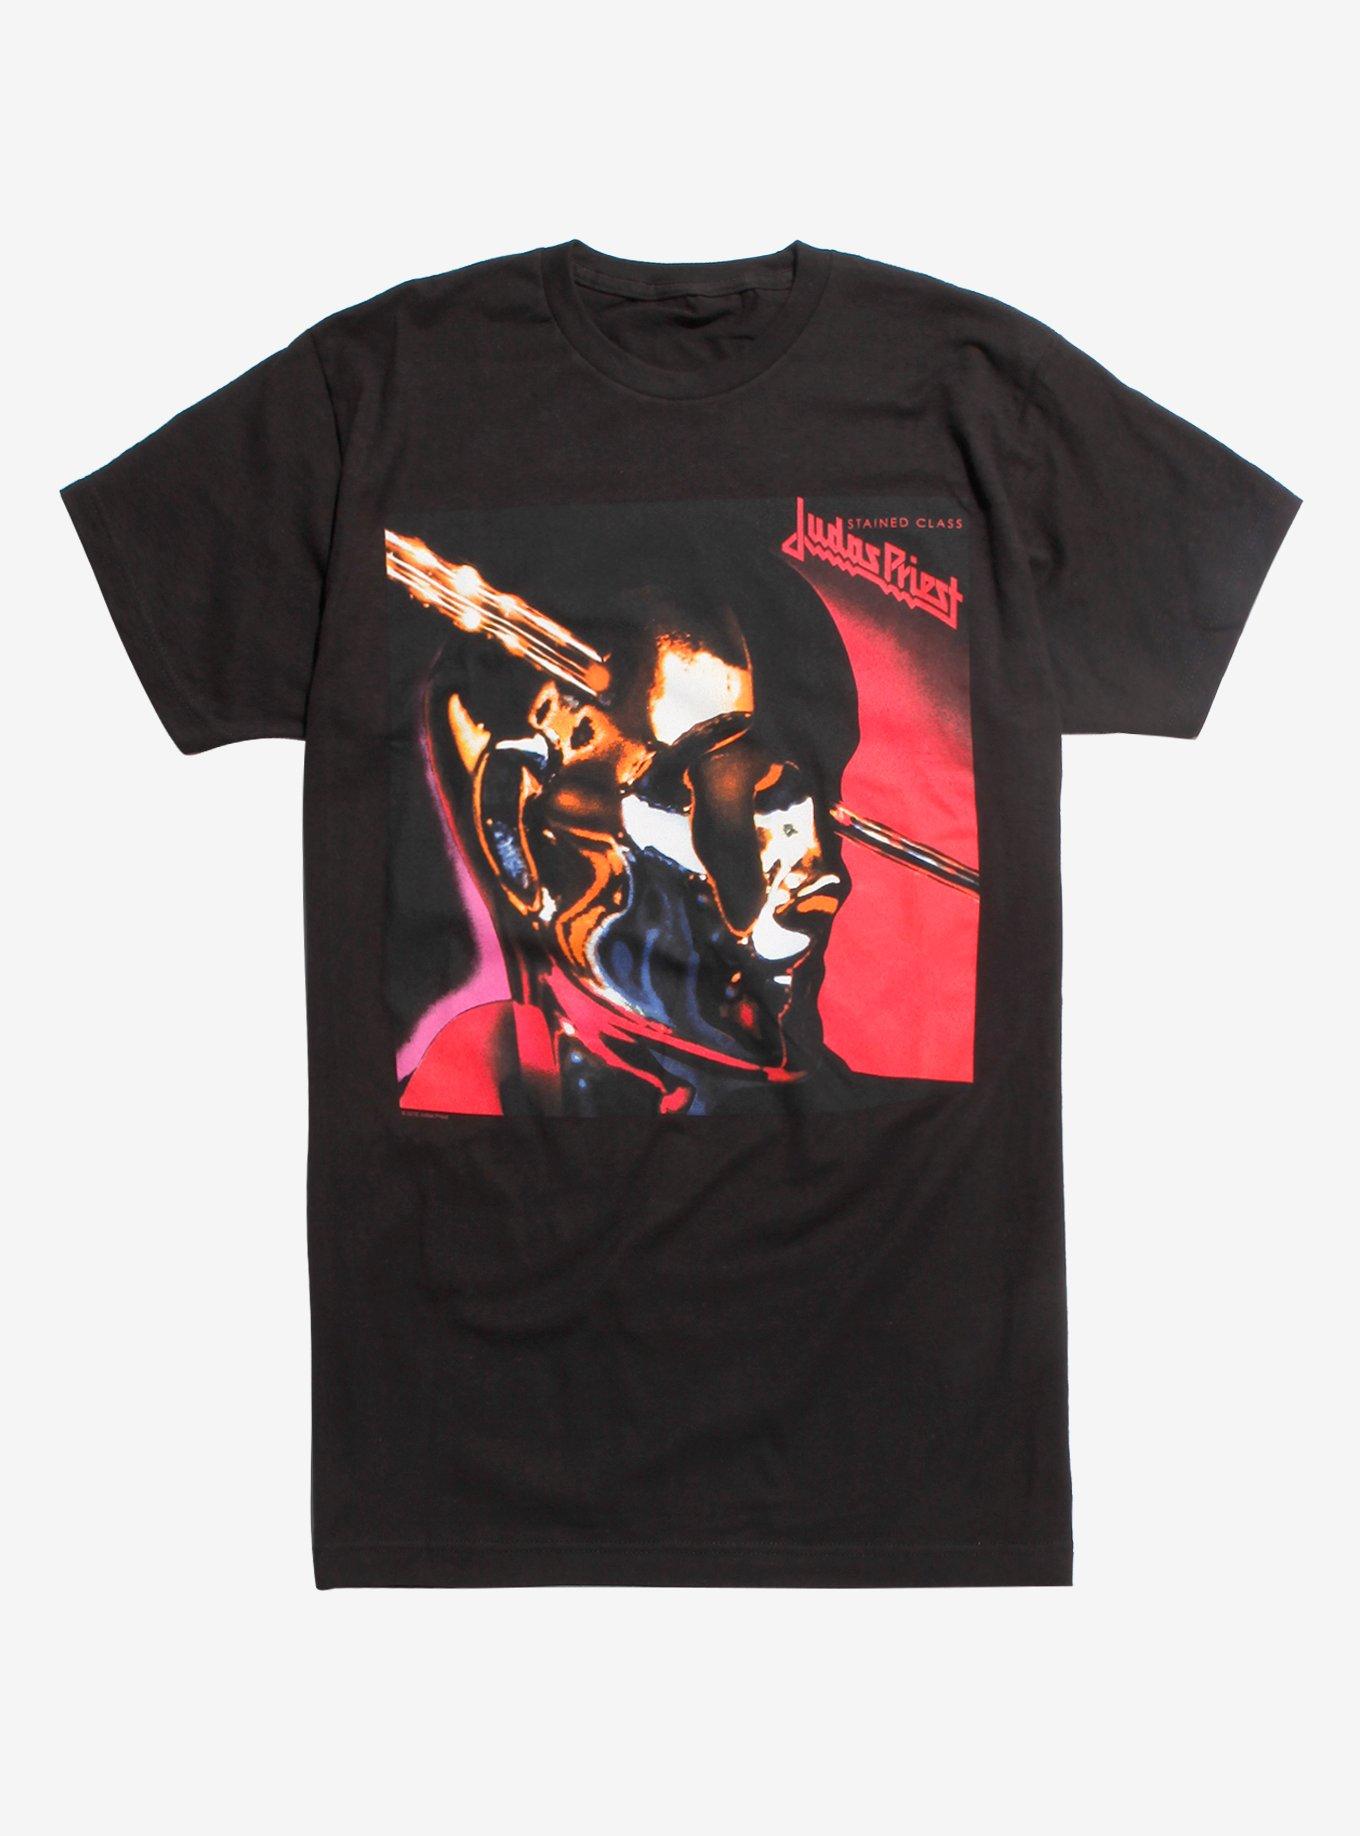 Judas Priest Stained Class Album Cover Shirt, BLACK, hi-res